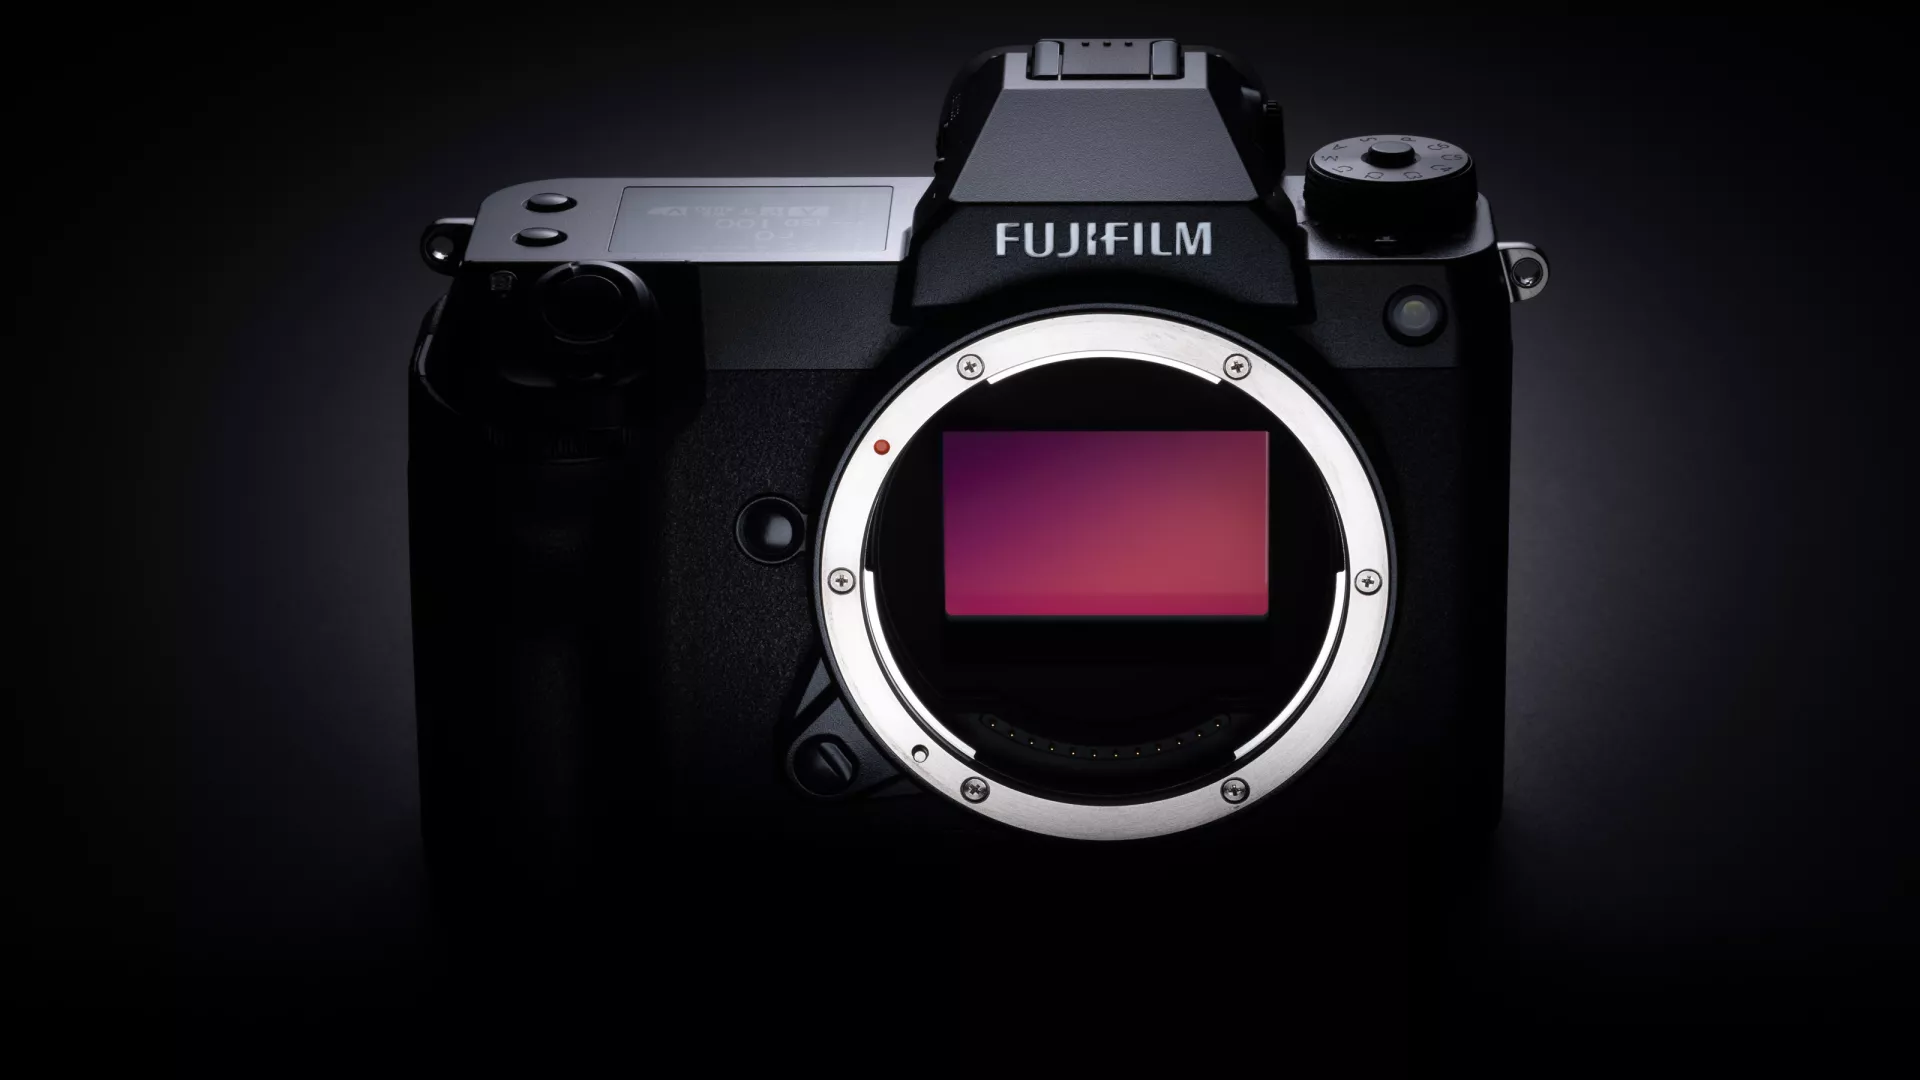 Un Fujifilm GFX 100 II en préparation ? Les rumeurs suggèrent une sortie imminente cette année !